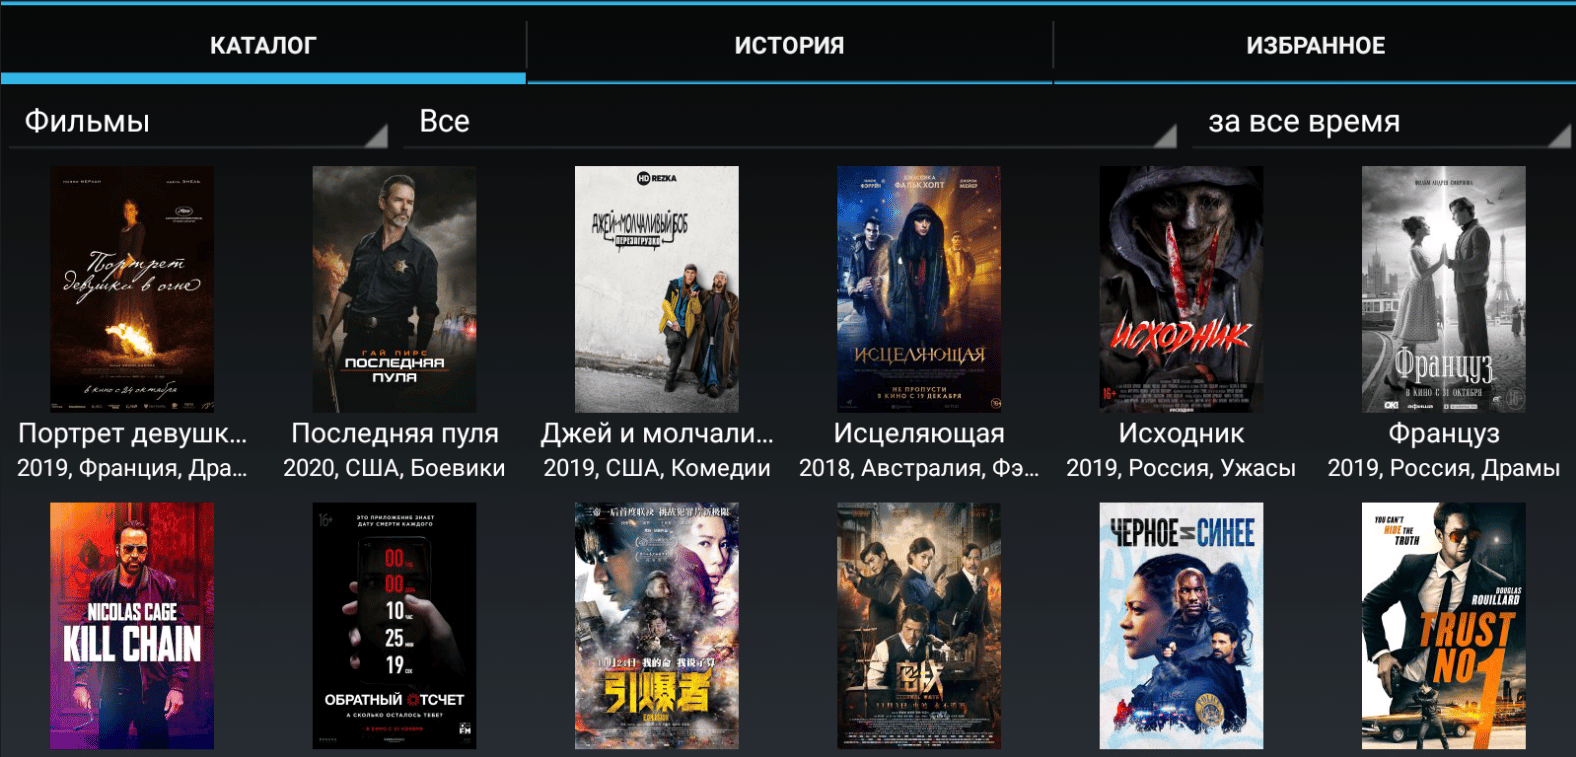 HDRezka Client для просмотра фильмов и сериалов на Андроид устройствах